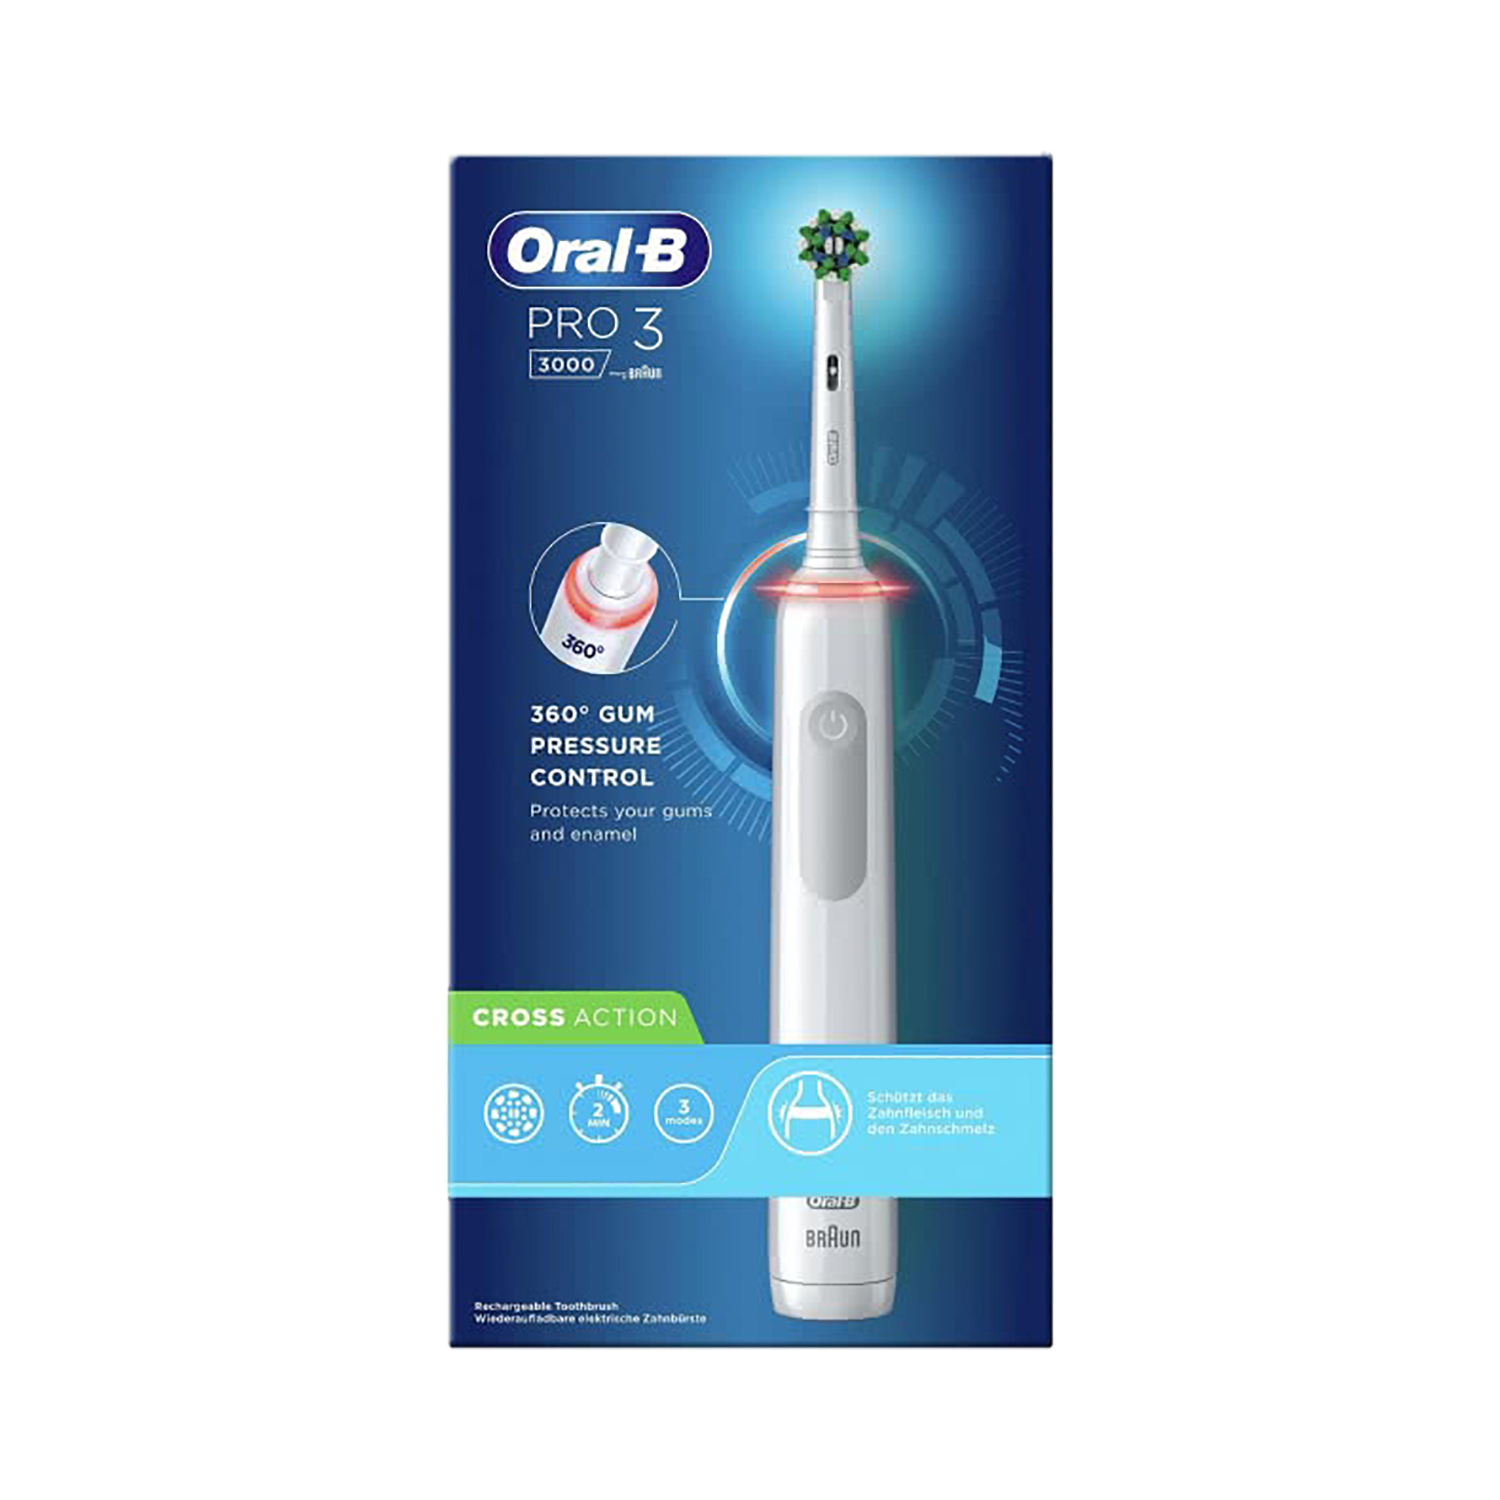 ORAL-B Pro 3 3000 Cross weiss Action Elektrische Zahnbürste